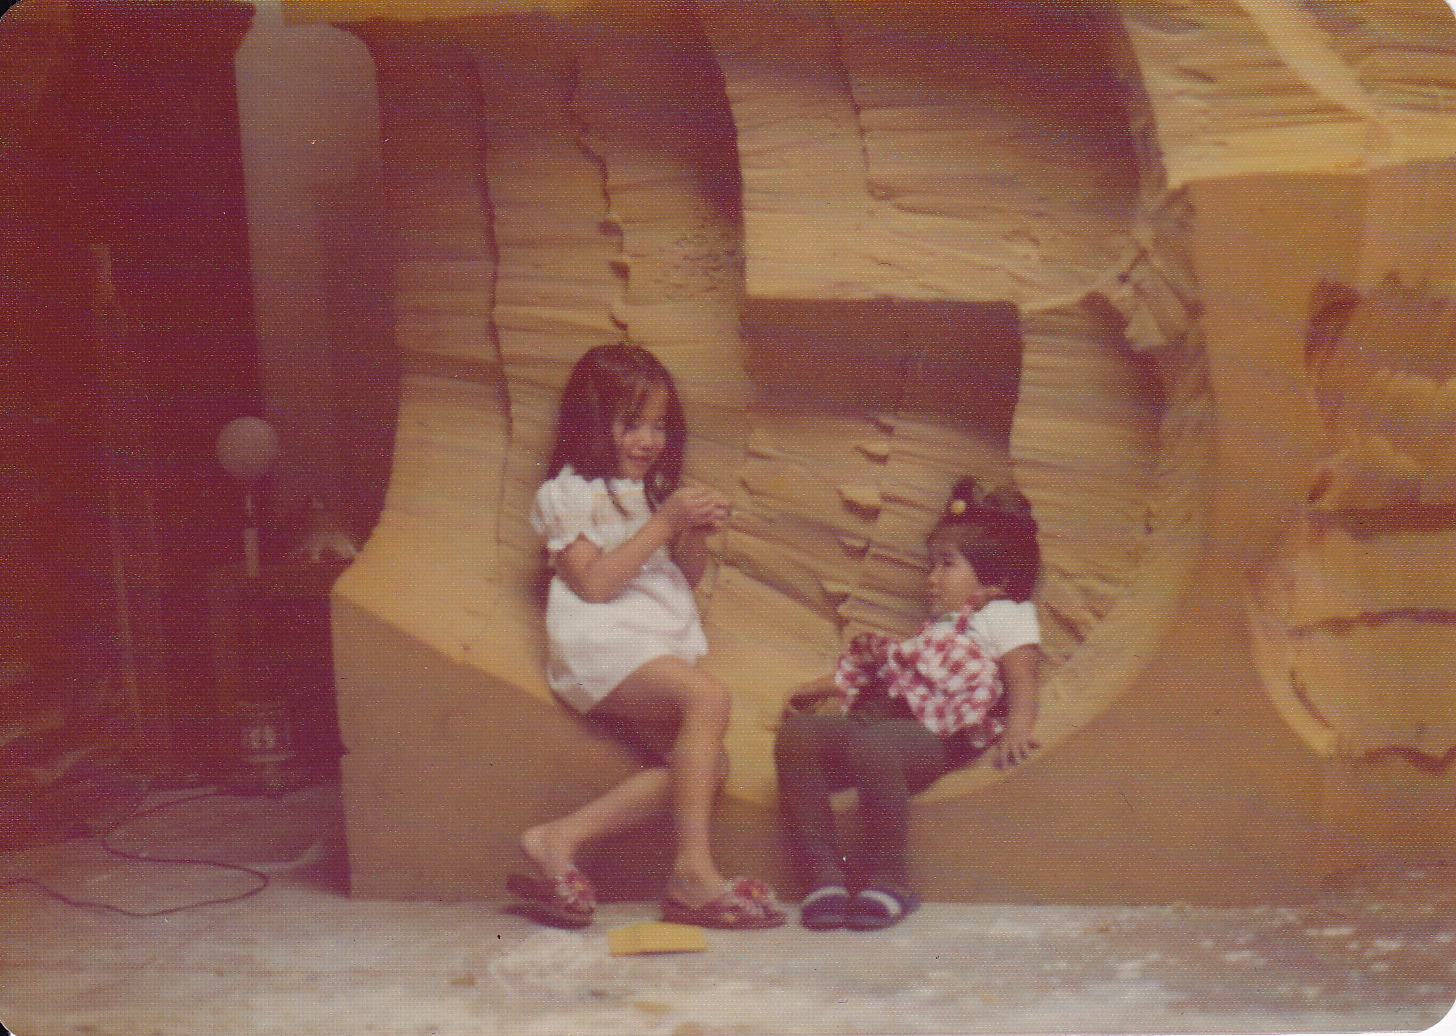 Girls on Chamberlain Foam Sculpture (1975)